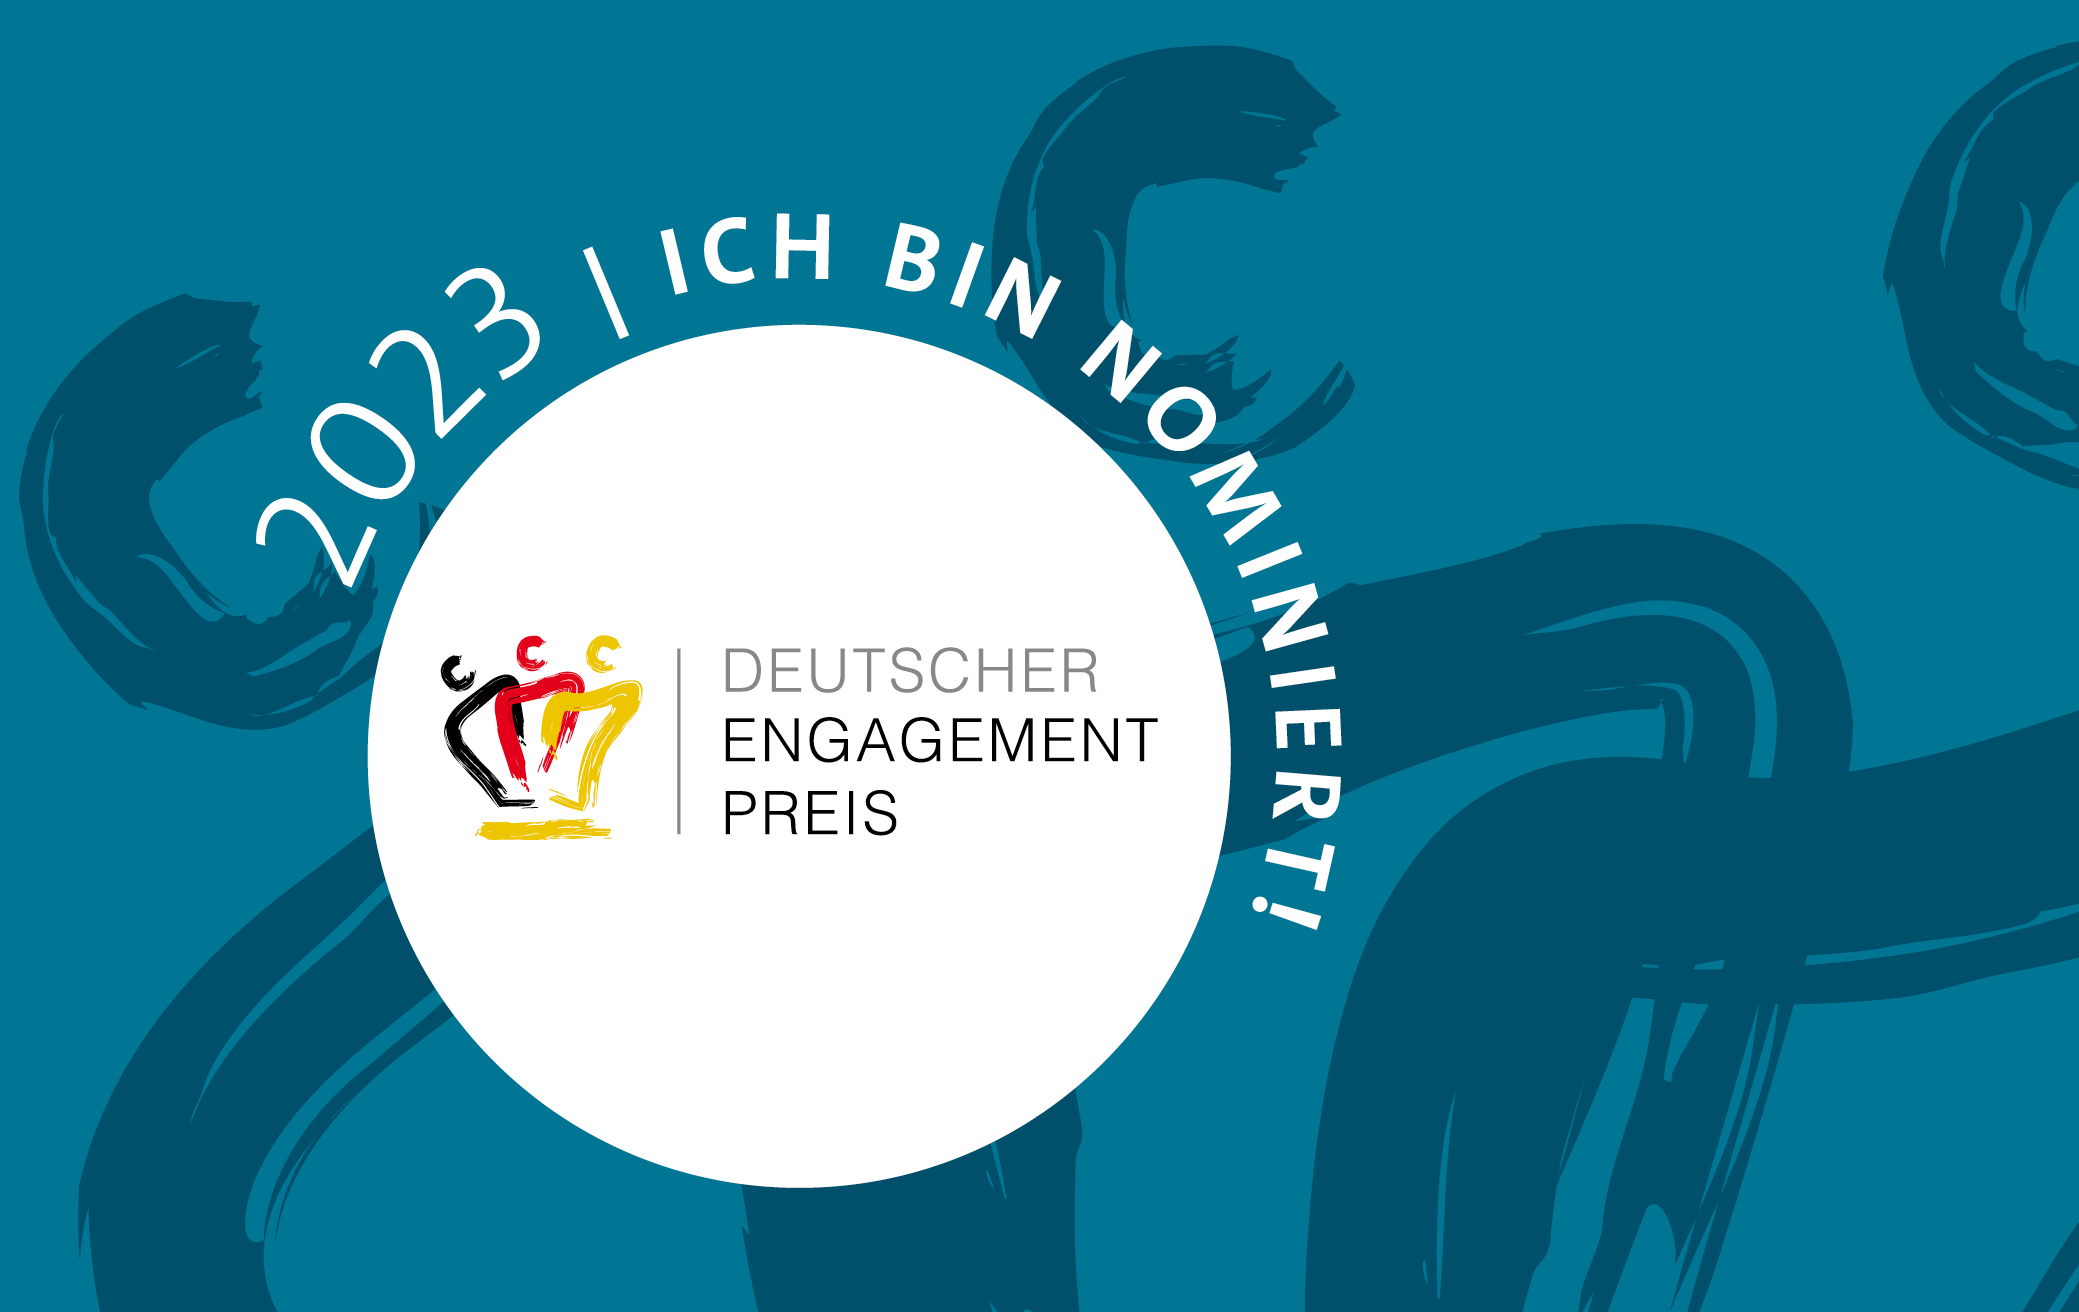 Deutscher Engagement Preis - Jetzt für uns abstimmen!